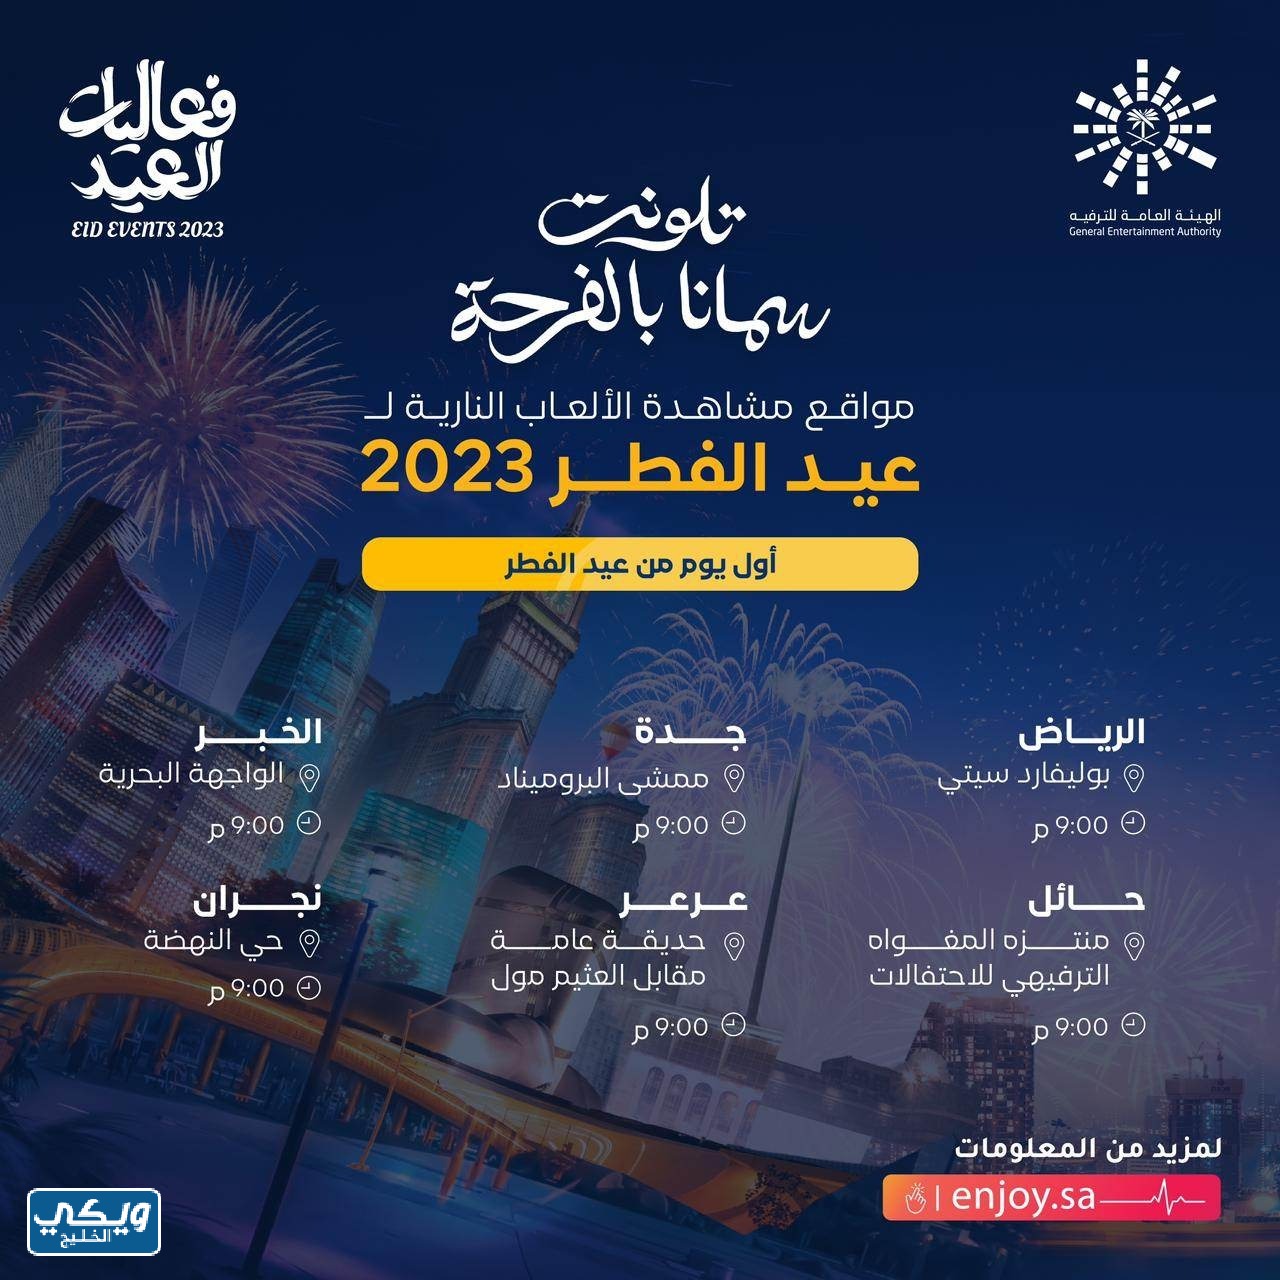 عروض الألعاب النارية عيد الفطر 2023 في السعودية 1444